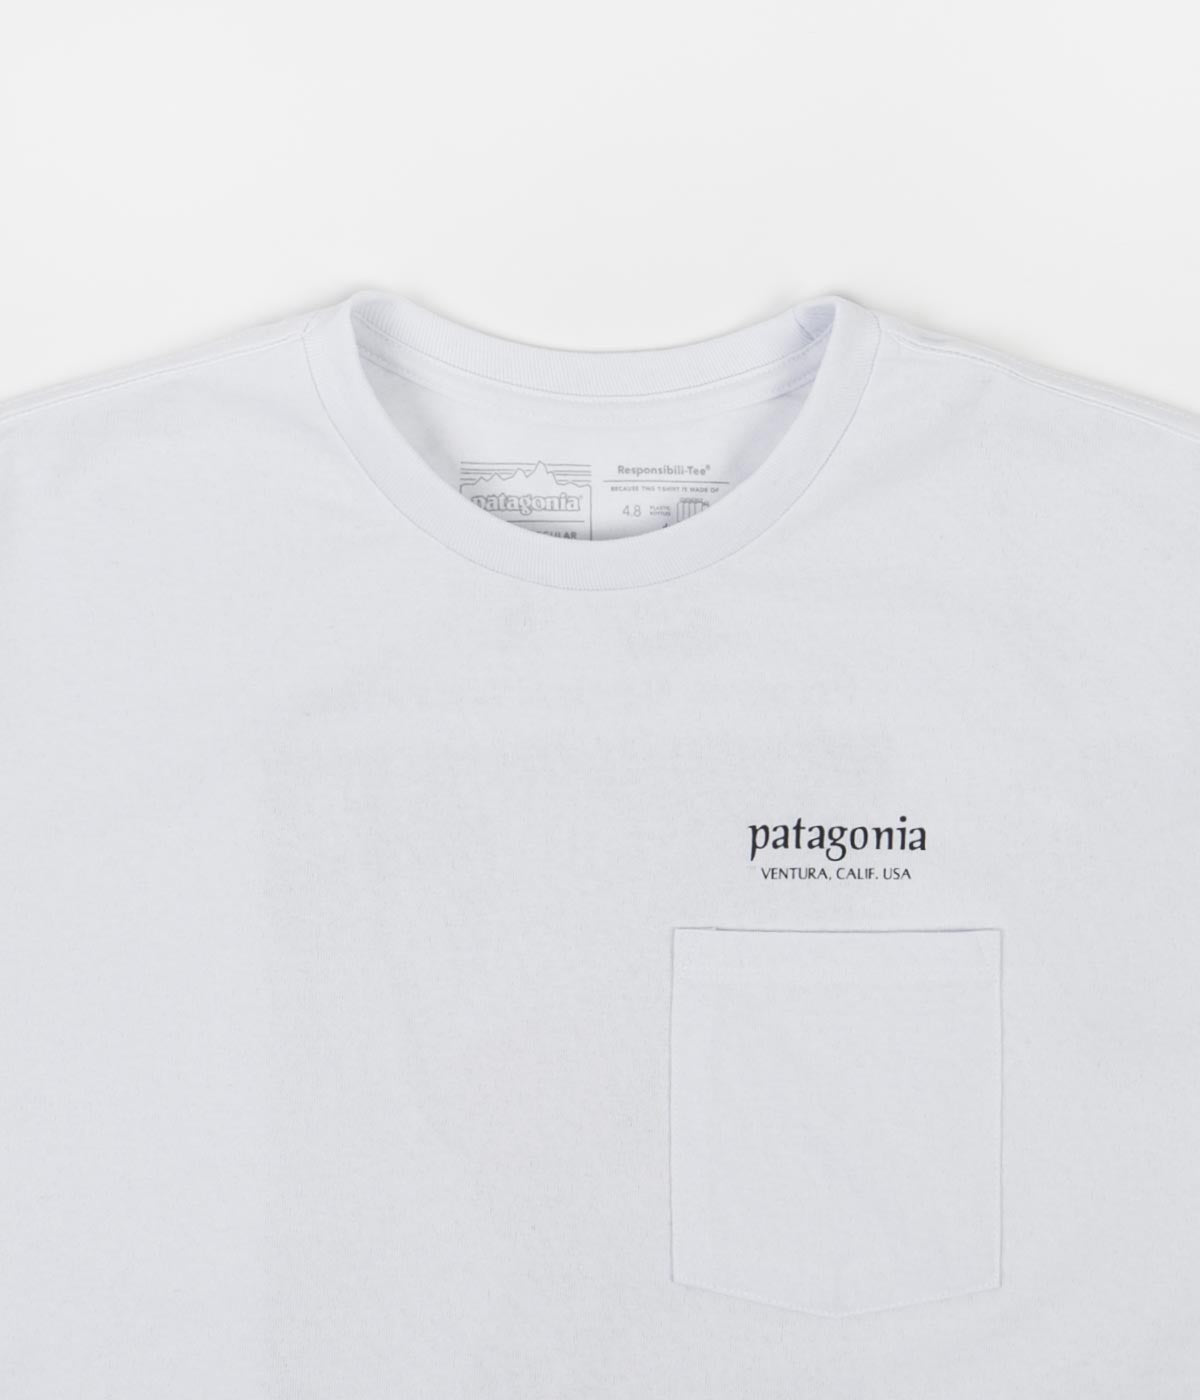 patagonia t shirt white